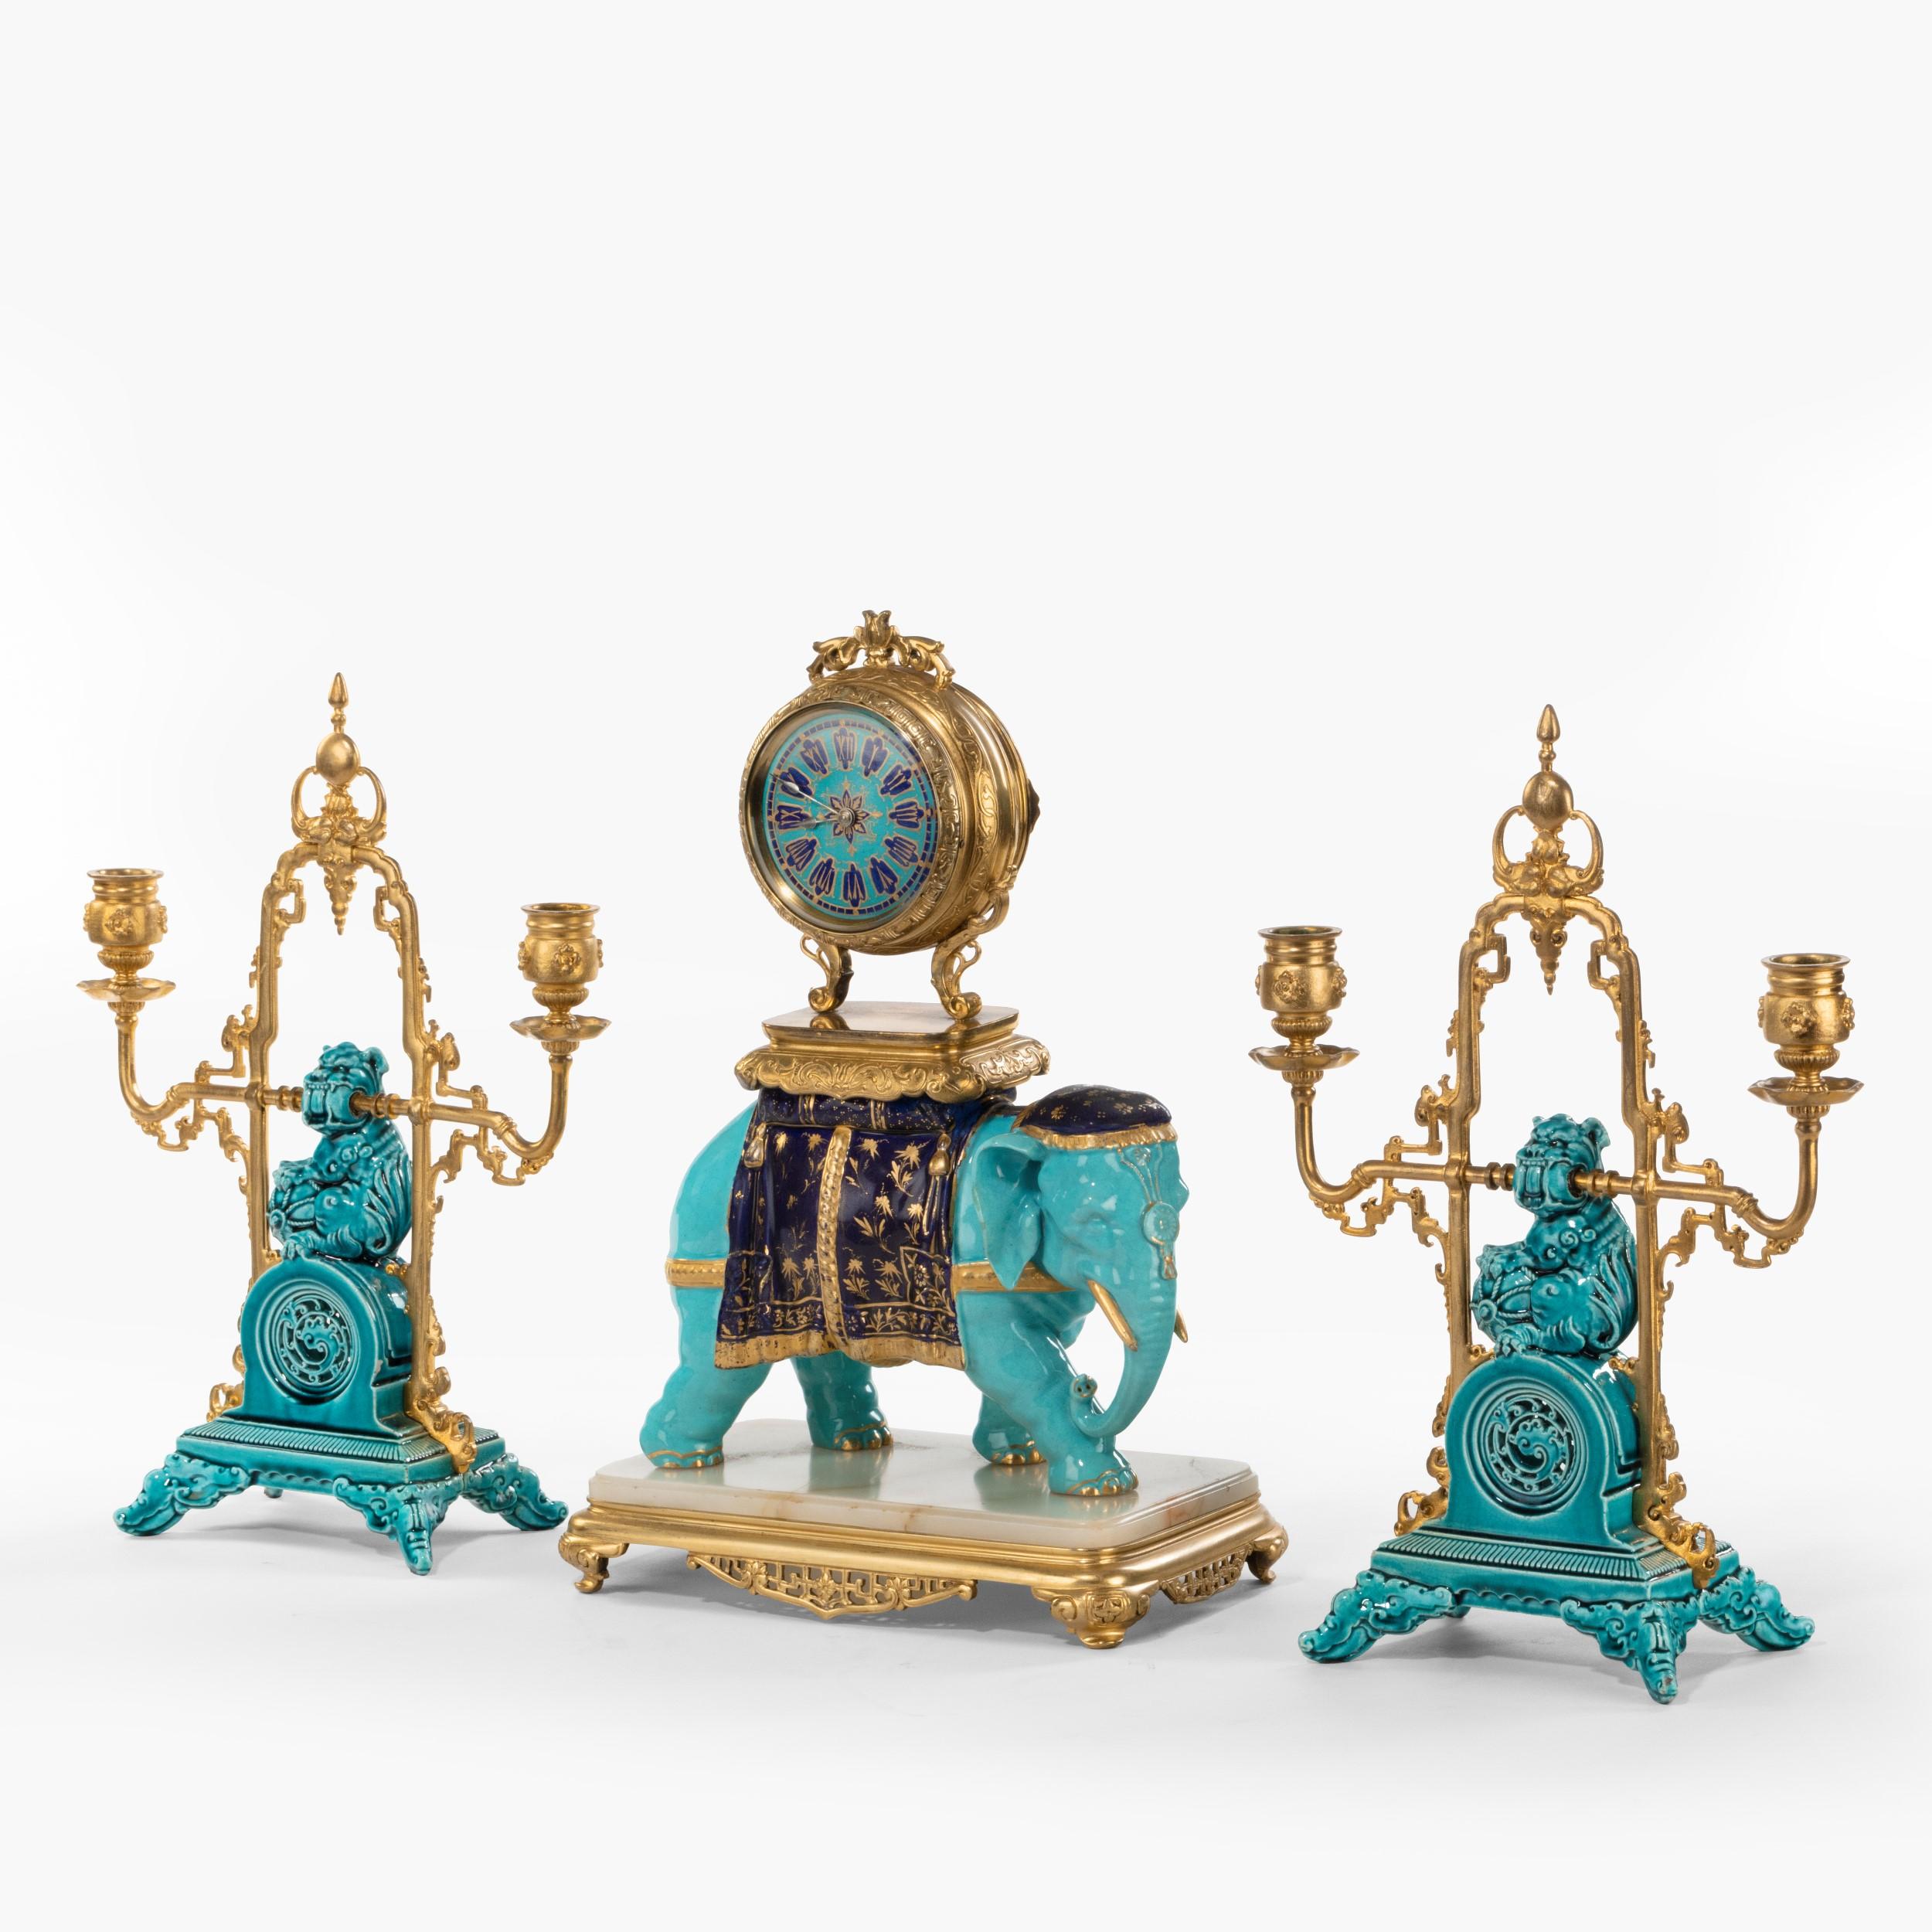 Une Garniture de Cheminée française au goût de la Chinoiserie

Réalisée en porcelaine bleu turquoise avec des reflets dorés, en onyx d'Algérie et en bronze, elle comprend une pendule à boîtier en bronze doré, dotée d'un mouvement de huit jours et